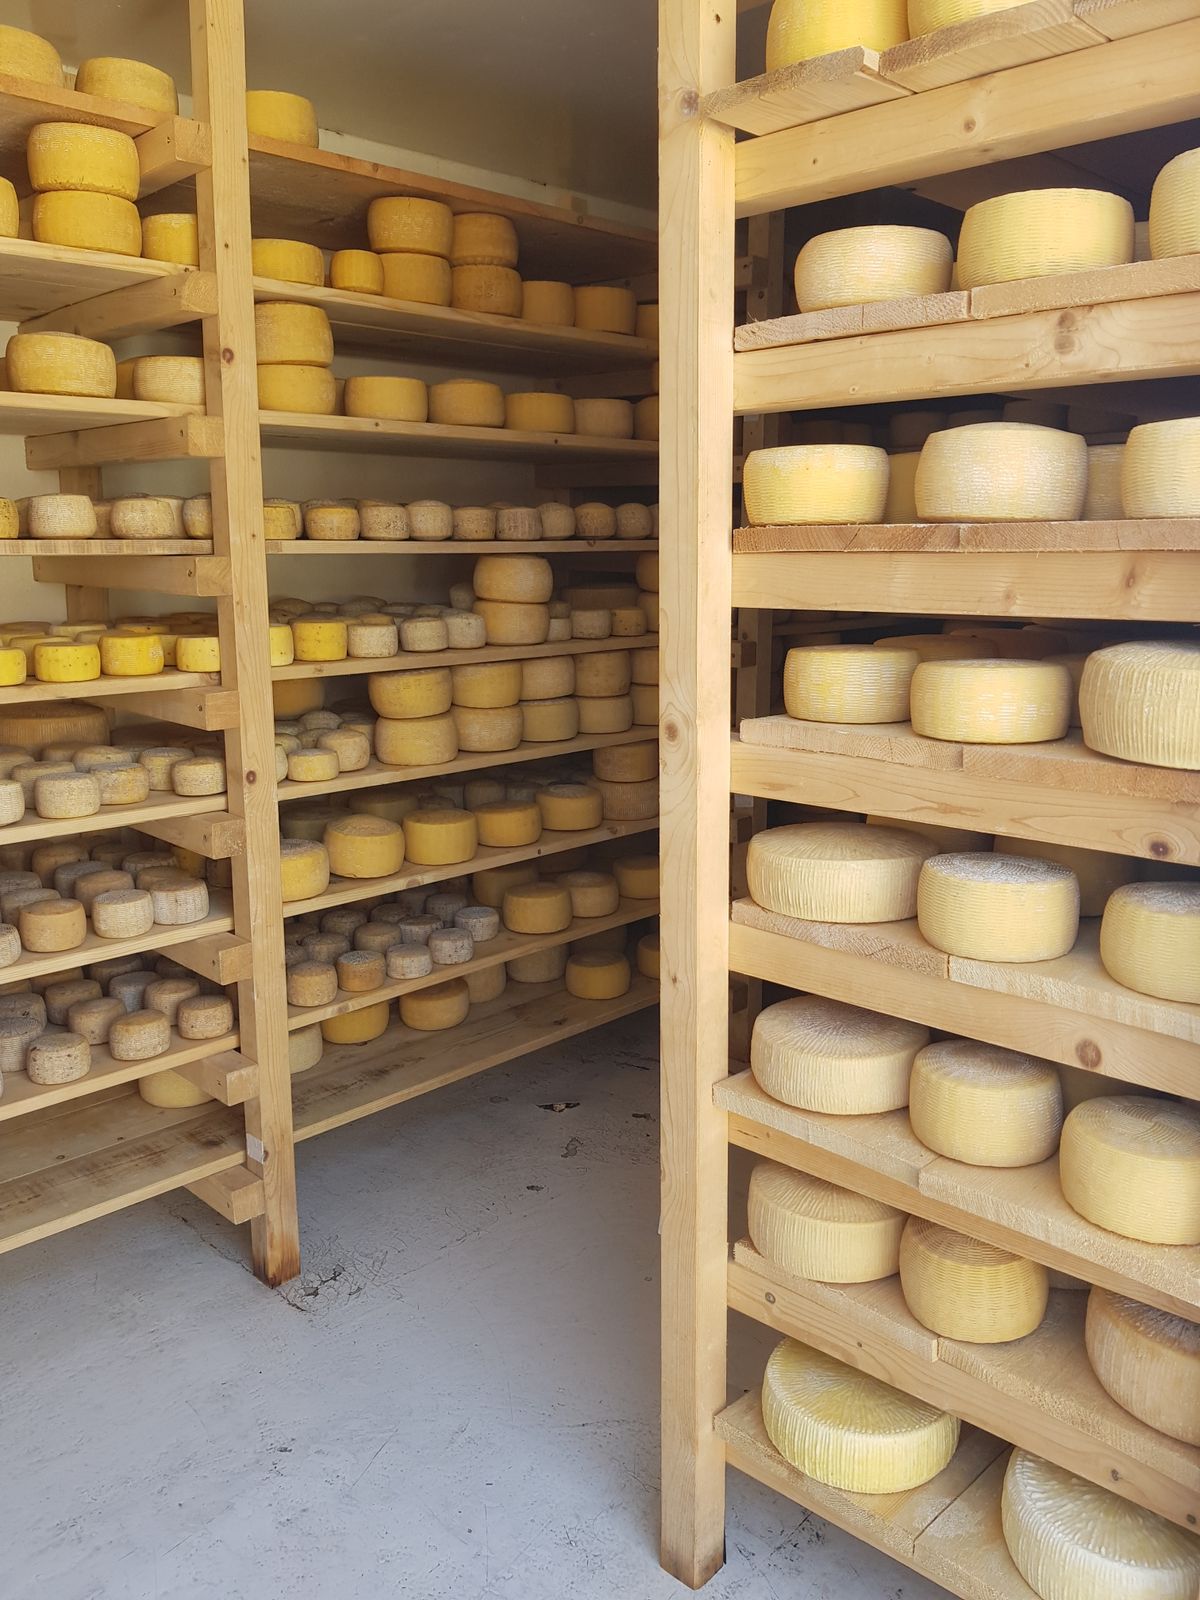 Házi sajtok sorakoznak a börtönből lett raktárban